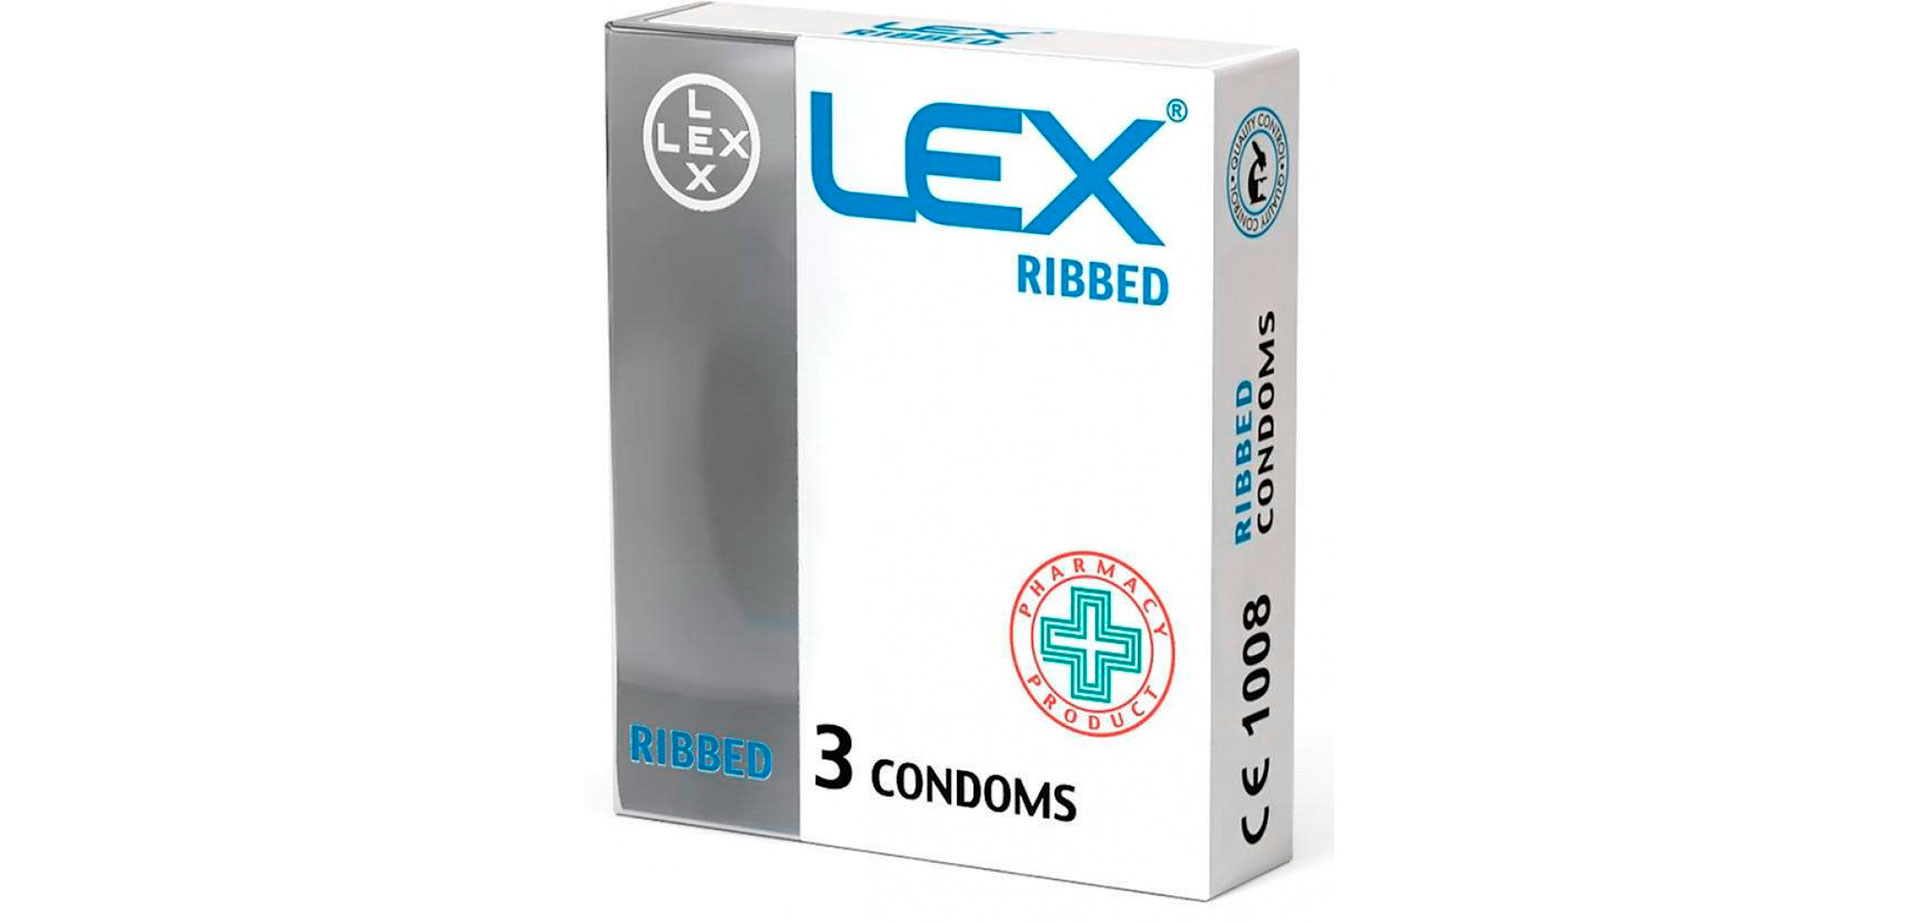 Ребристые рельефные презервативы.